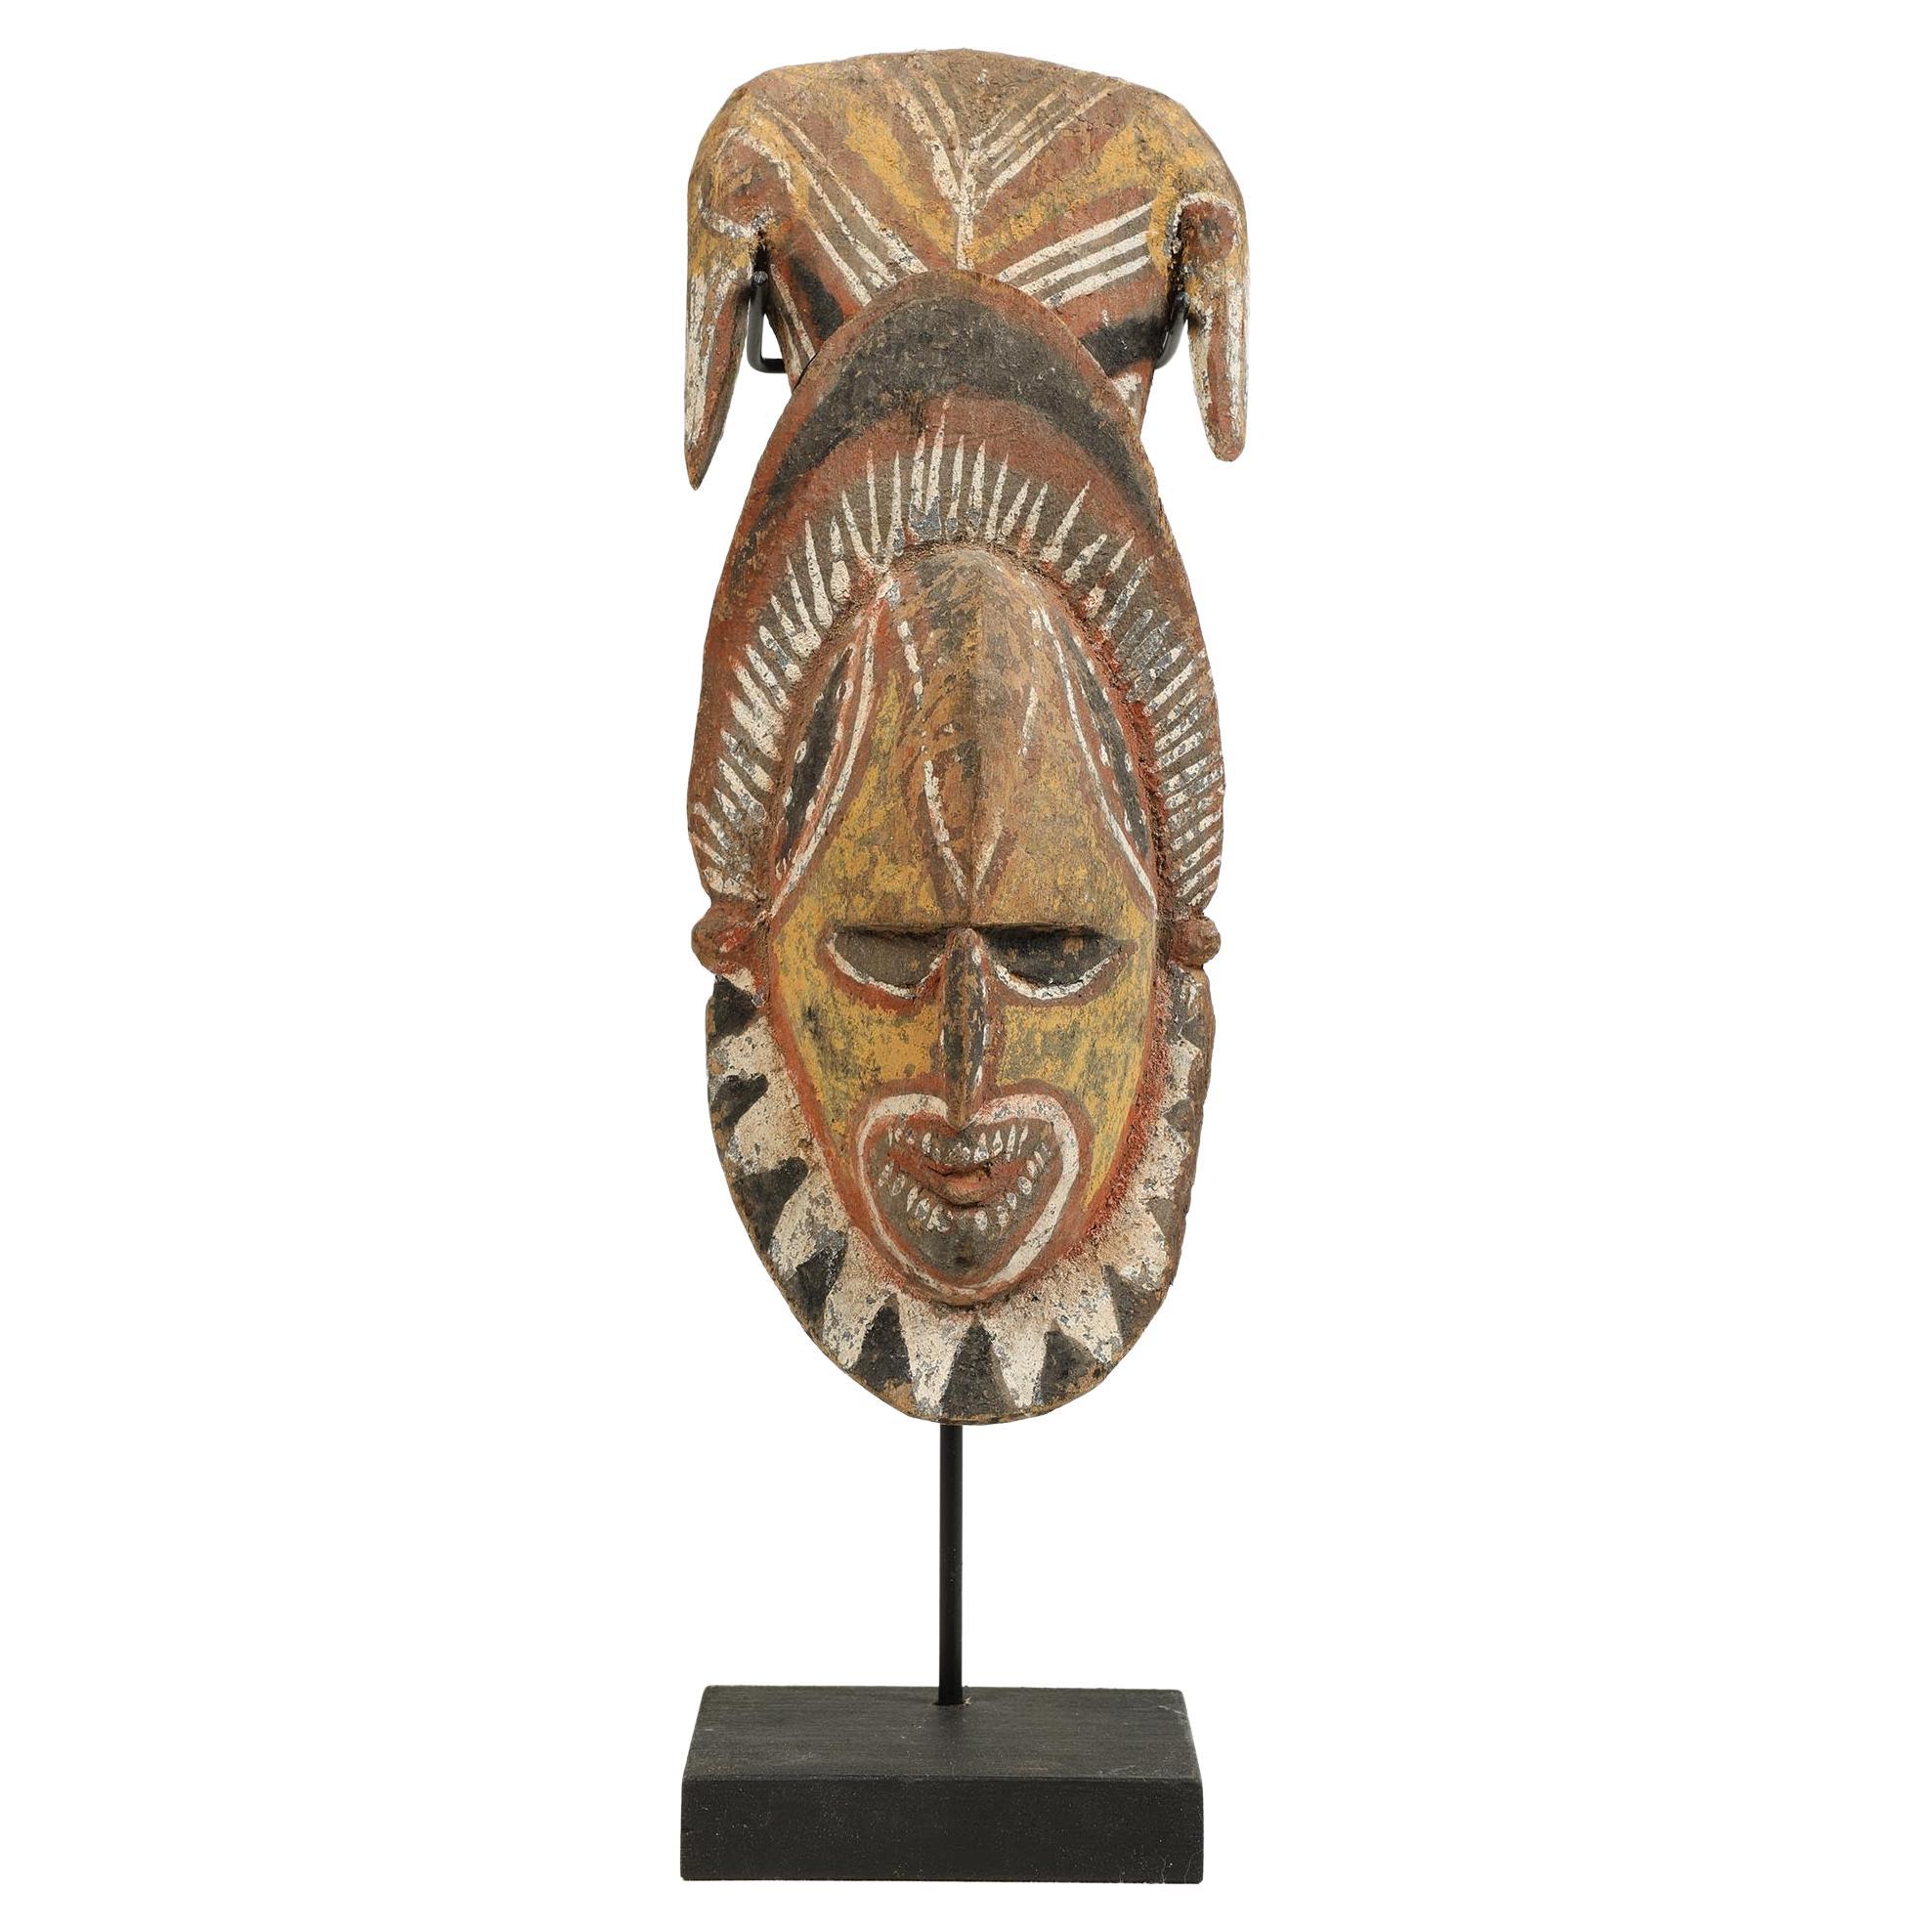 Tête ou masque en bois d'érable peint de Papouasie-Nouvelle-Guinée, forte expression